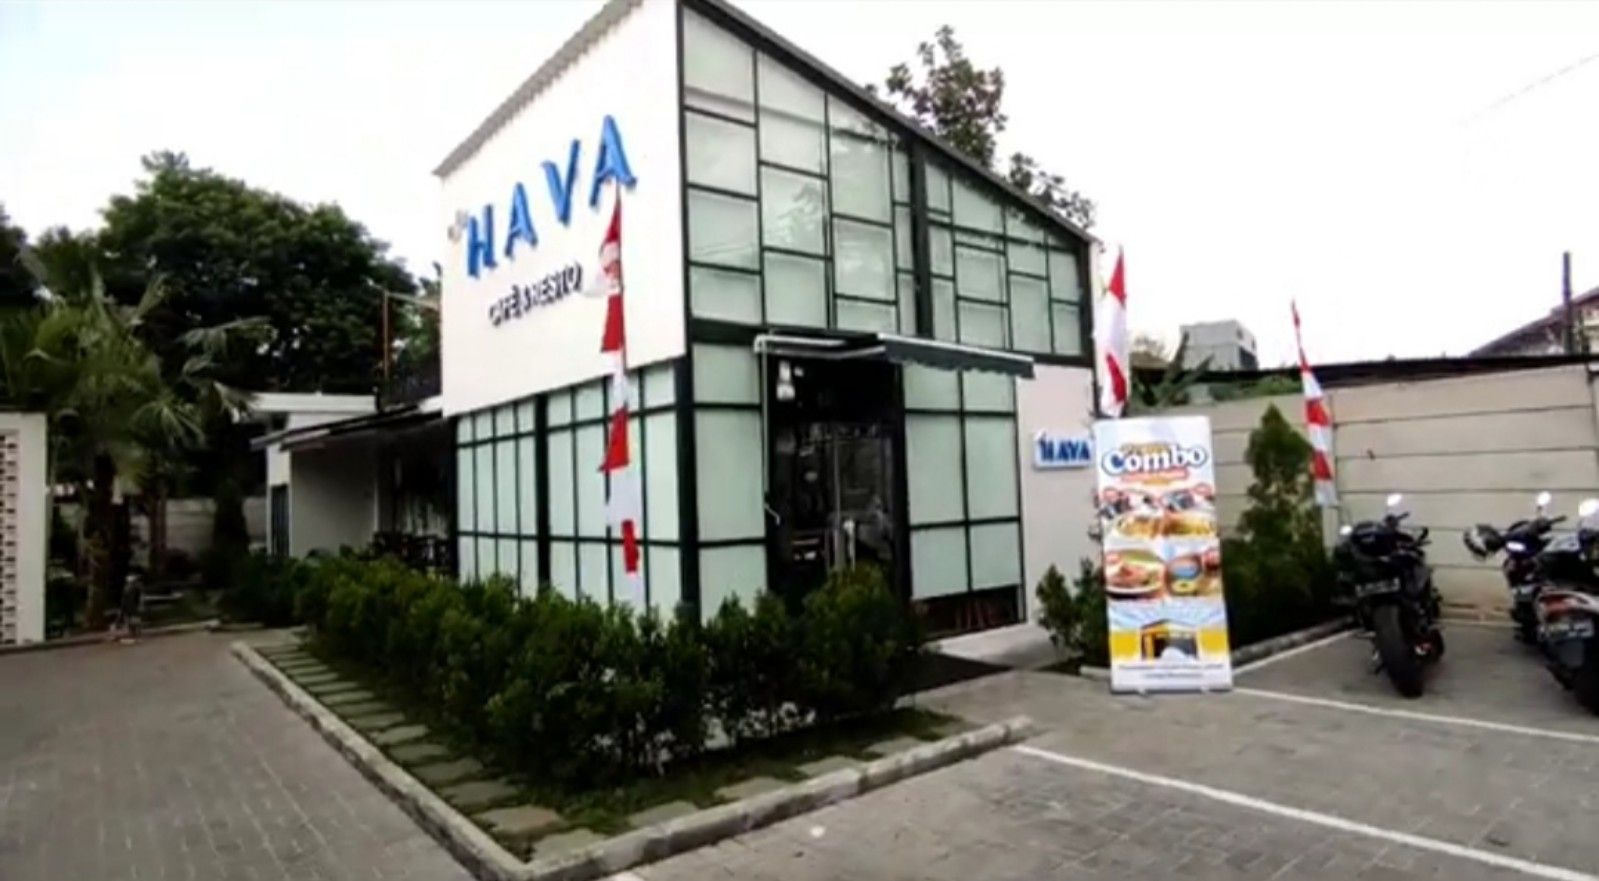 Hava Cafe dan Resto, tempat kuliner asyik cozy di Pondok Aren Tangerang Selatan Banten/tangkapan layar youtube/Channel Dzain Family 